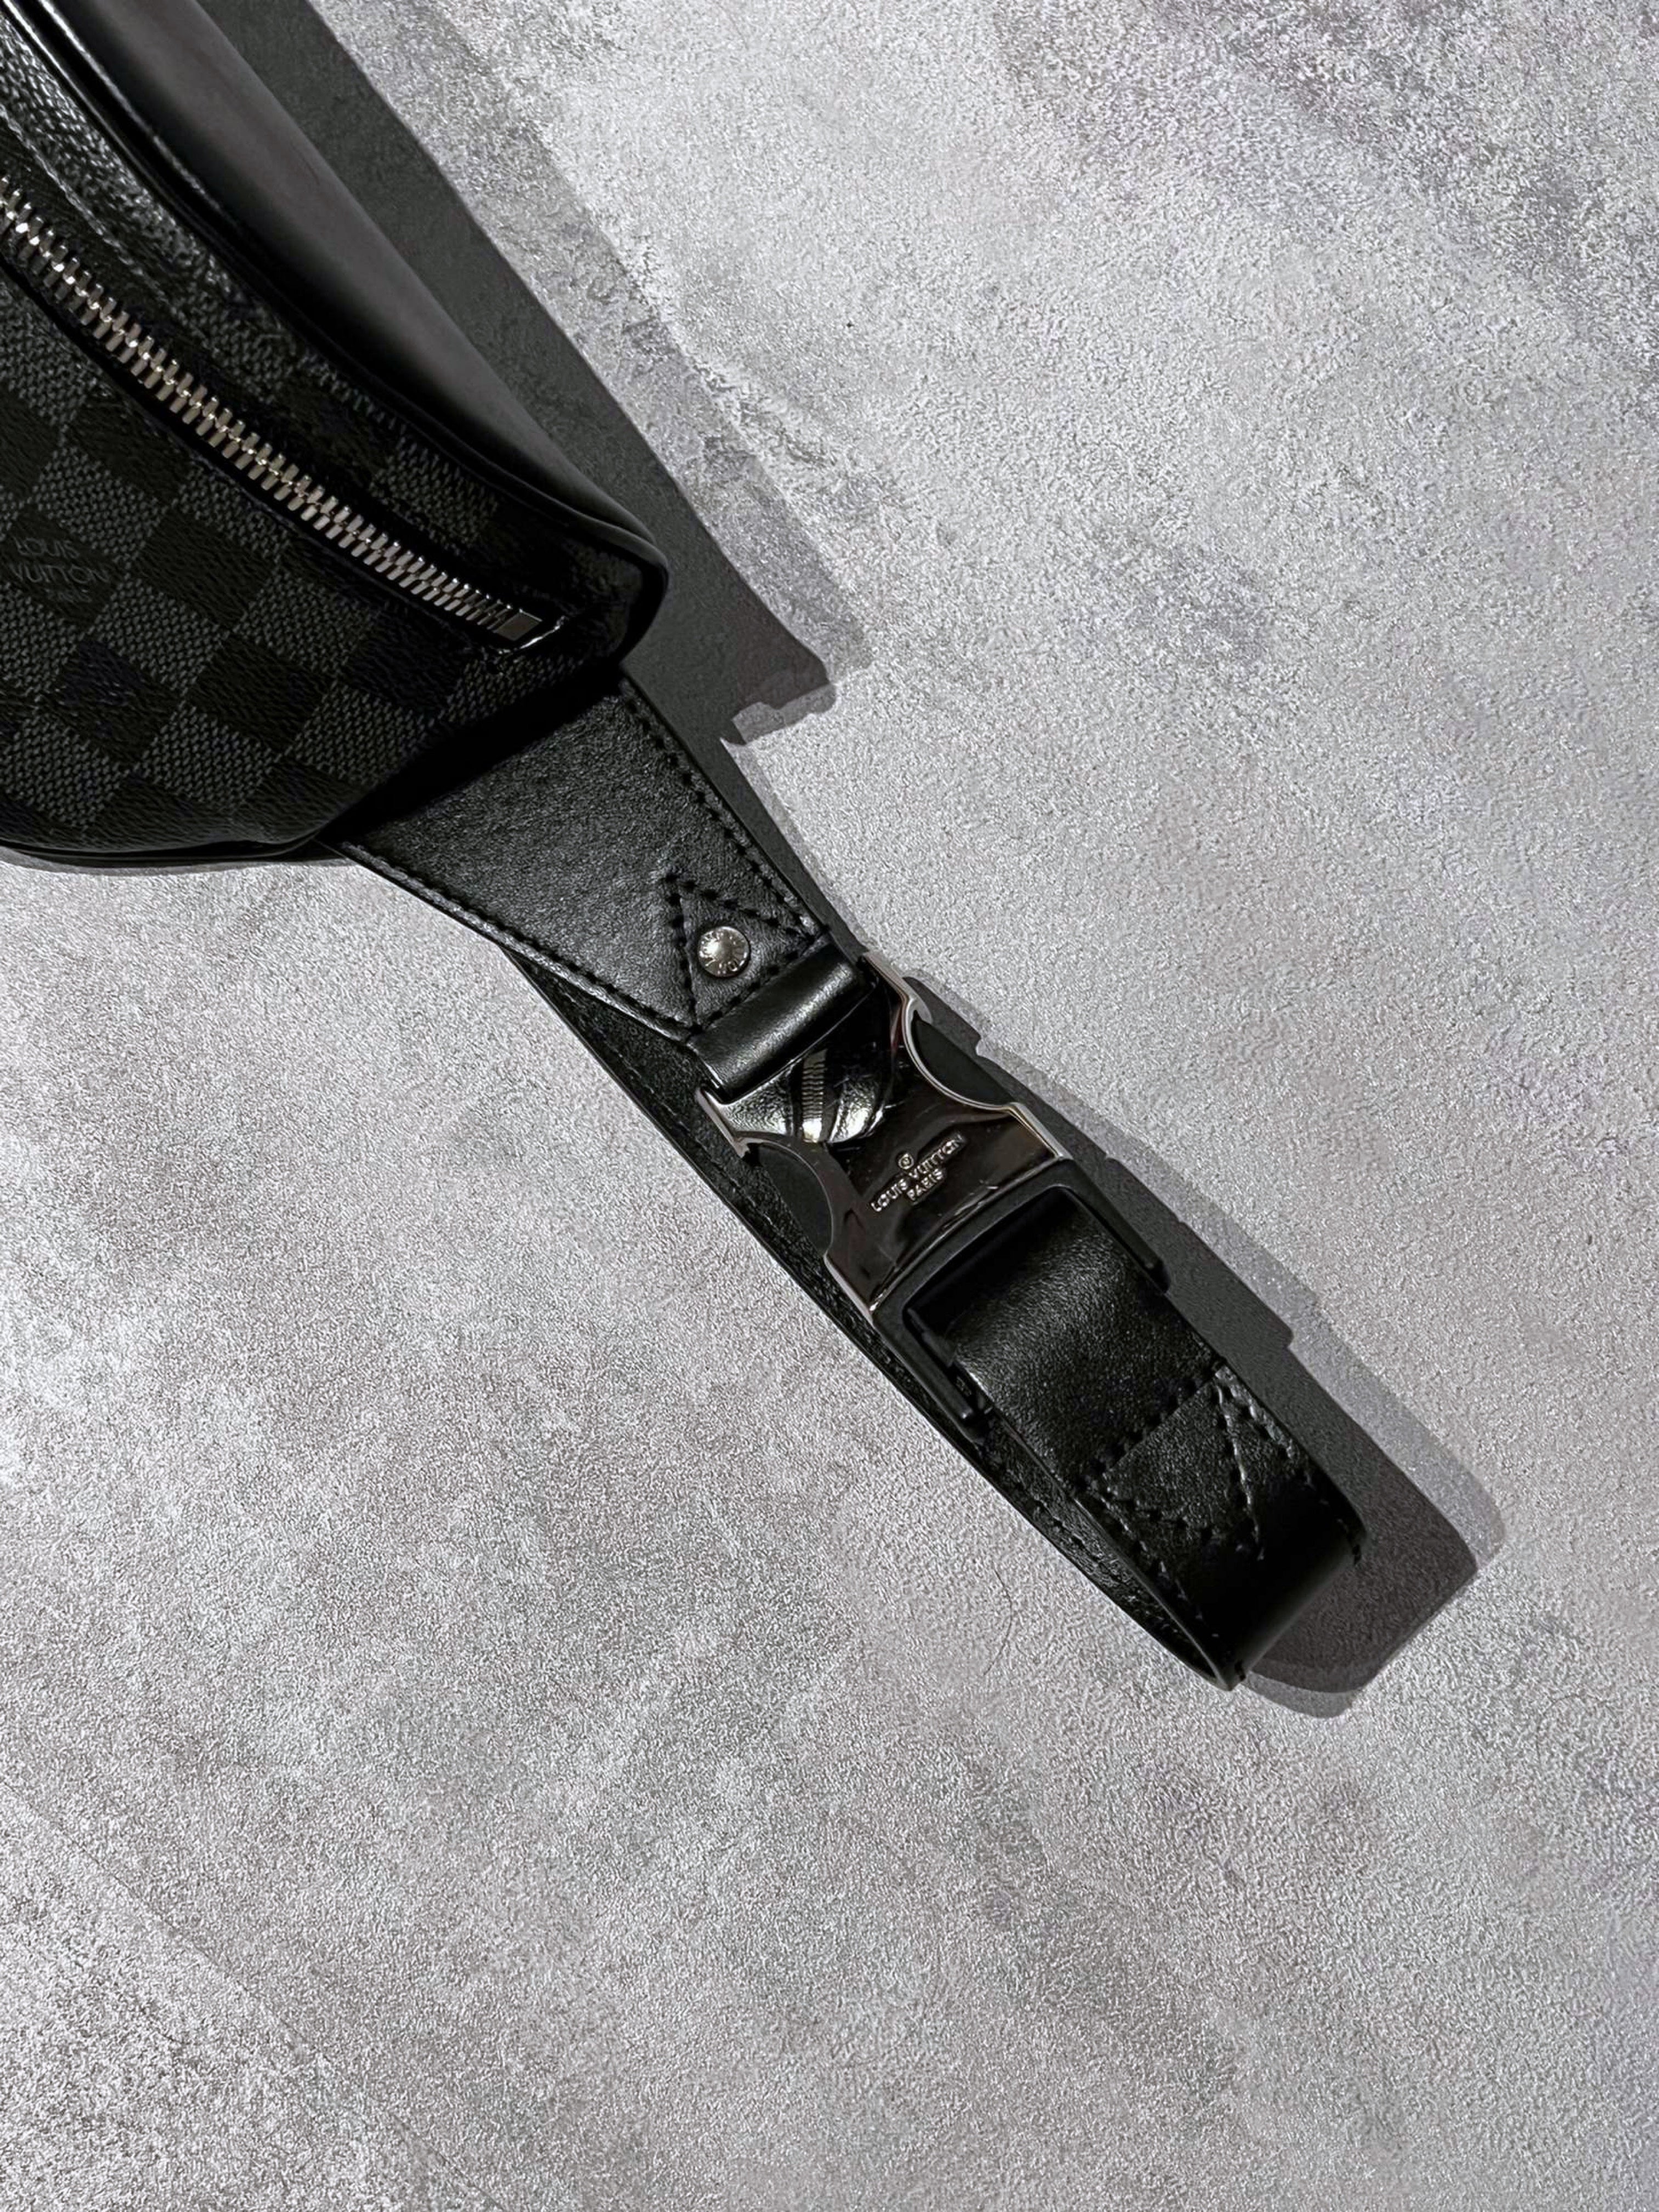 Louis Vuitton DAMIER Canvas Belt – CnExclusives